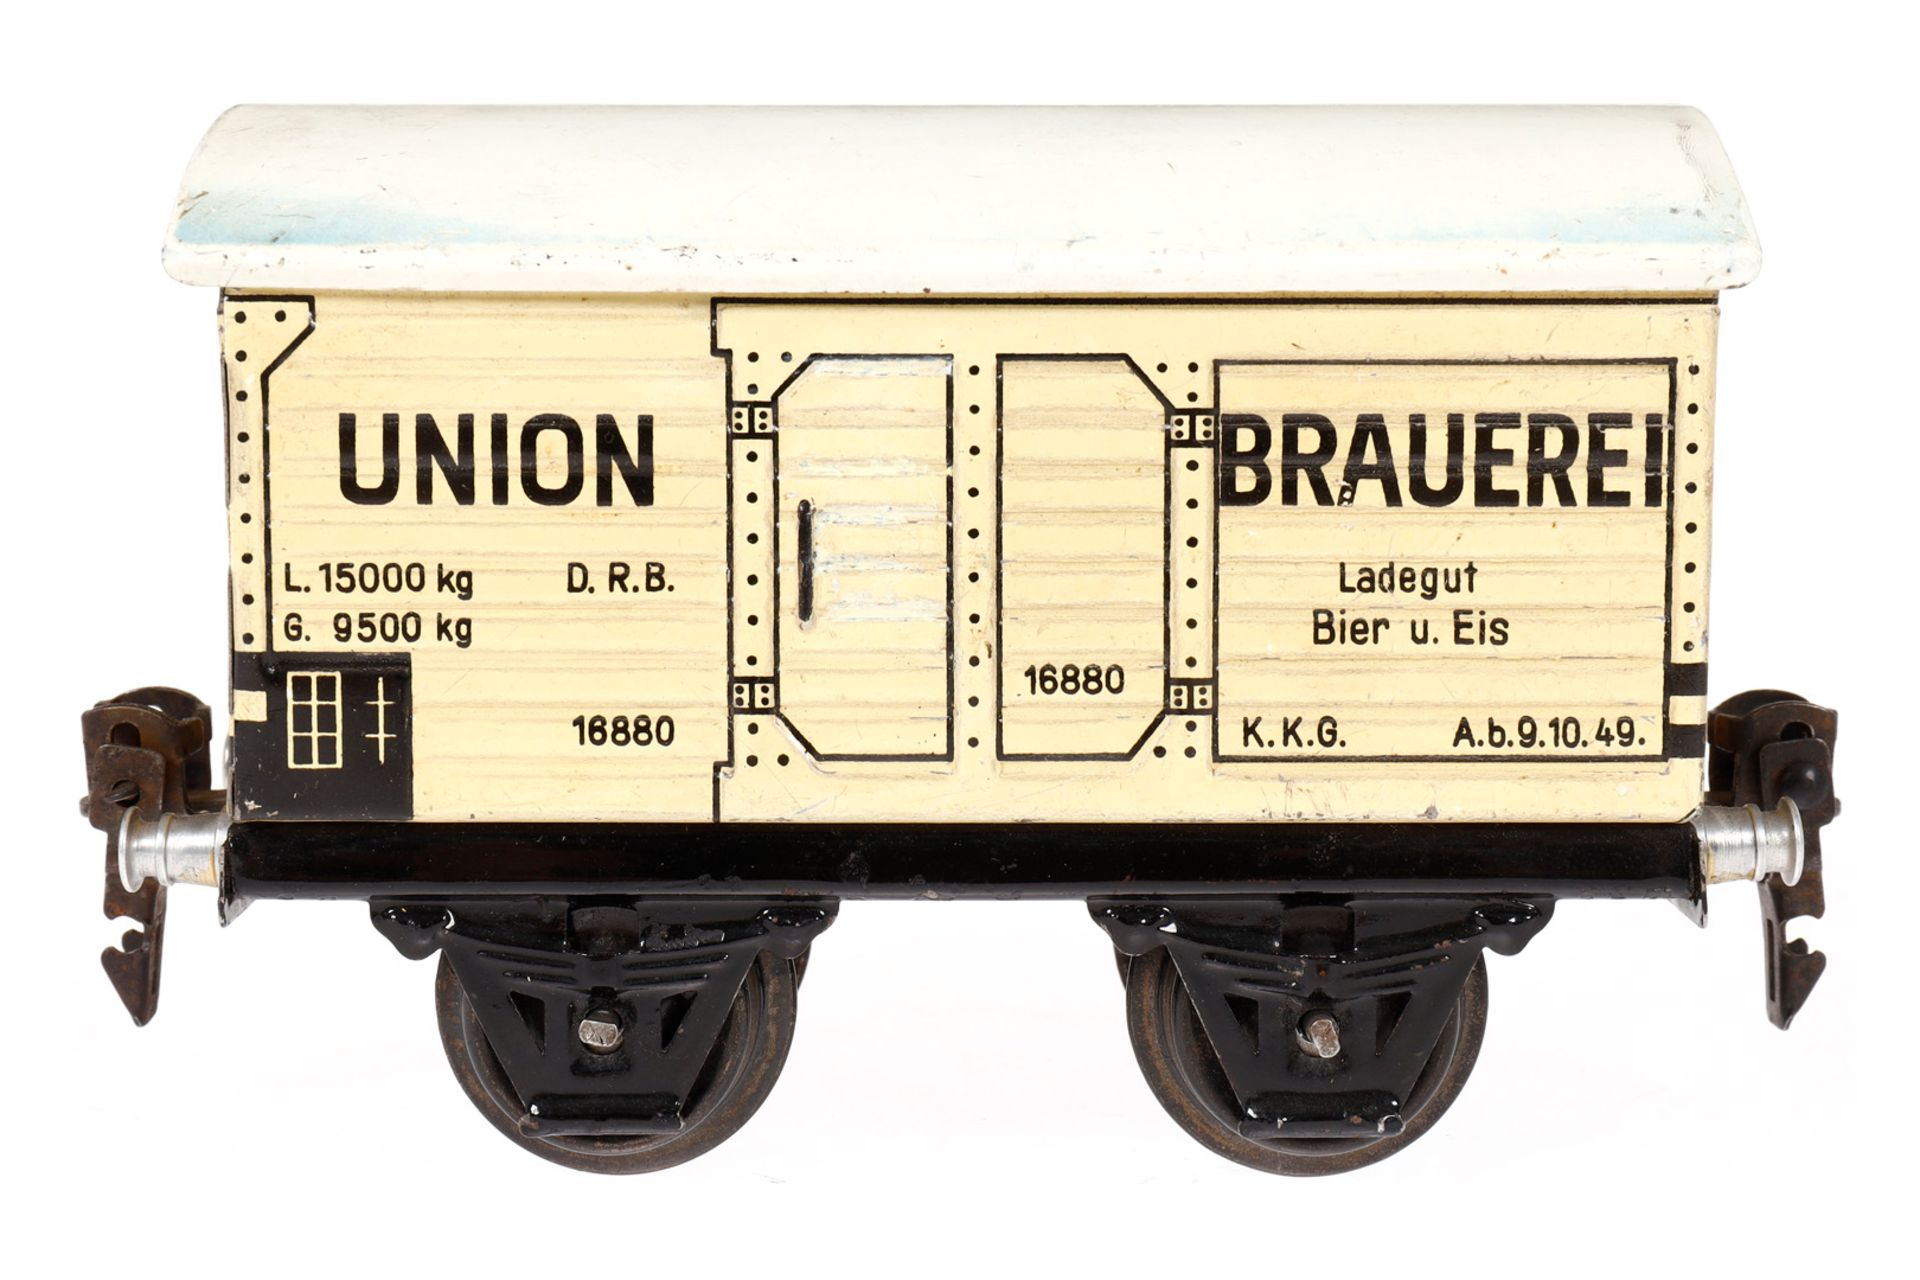 Märklin Union Bierwagen 1688, Spur 0, CL, mit 1 ST, LS tw ausgeb., gealterter Lack, L 13, Z 2-3